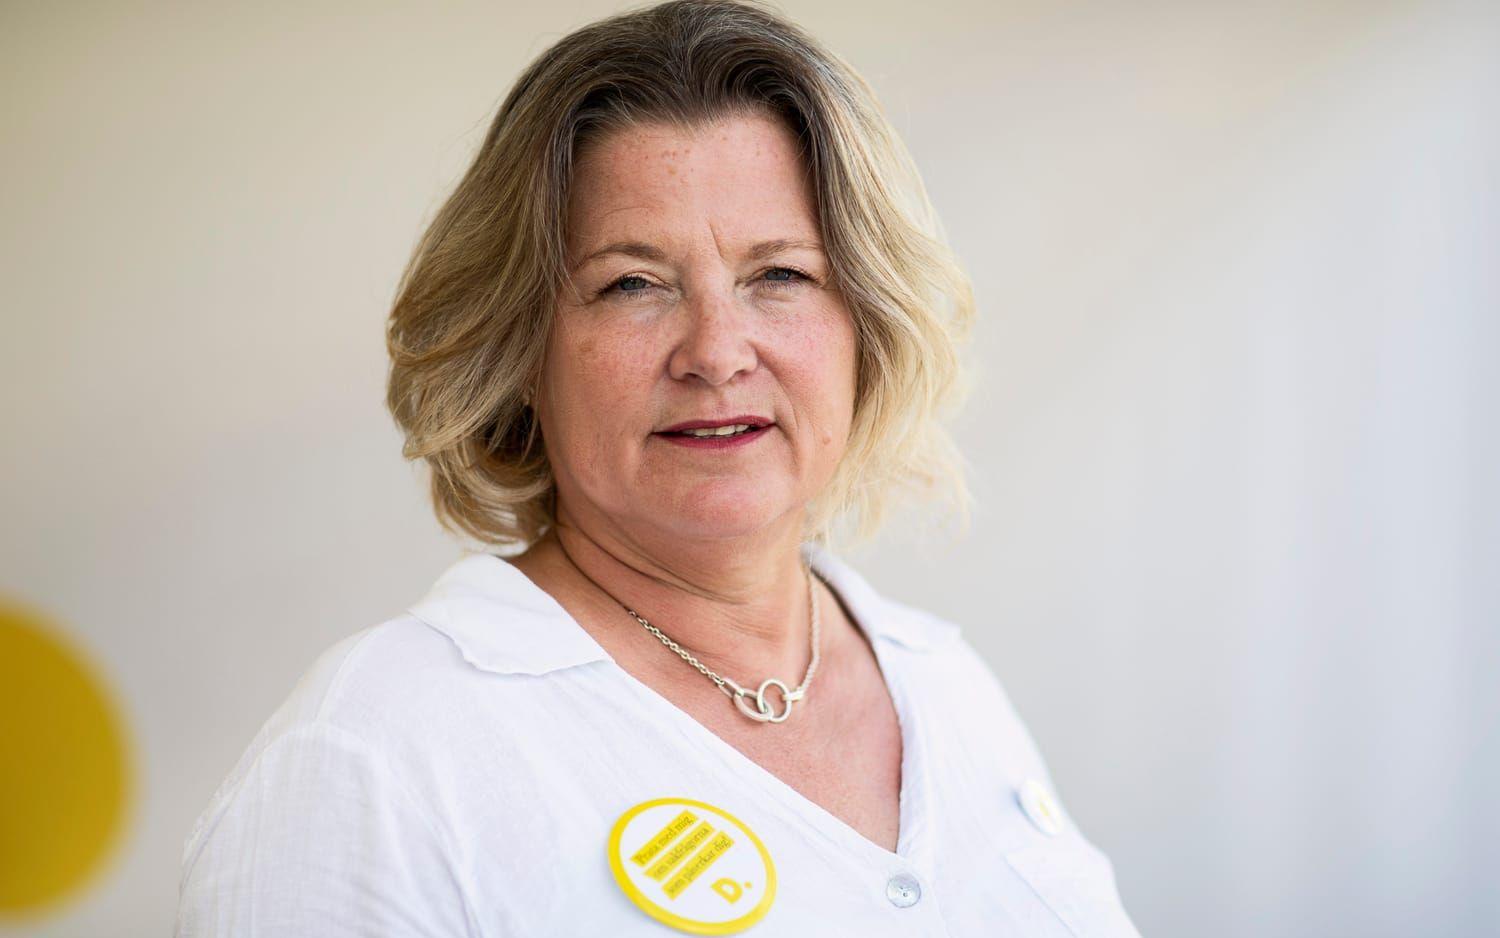 Regionpolitikern Mariette Höij Risberg (D): ”Vi blir besvikna om vi inte kommer med”.